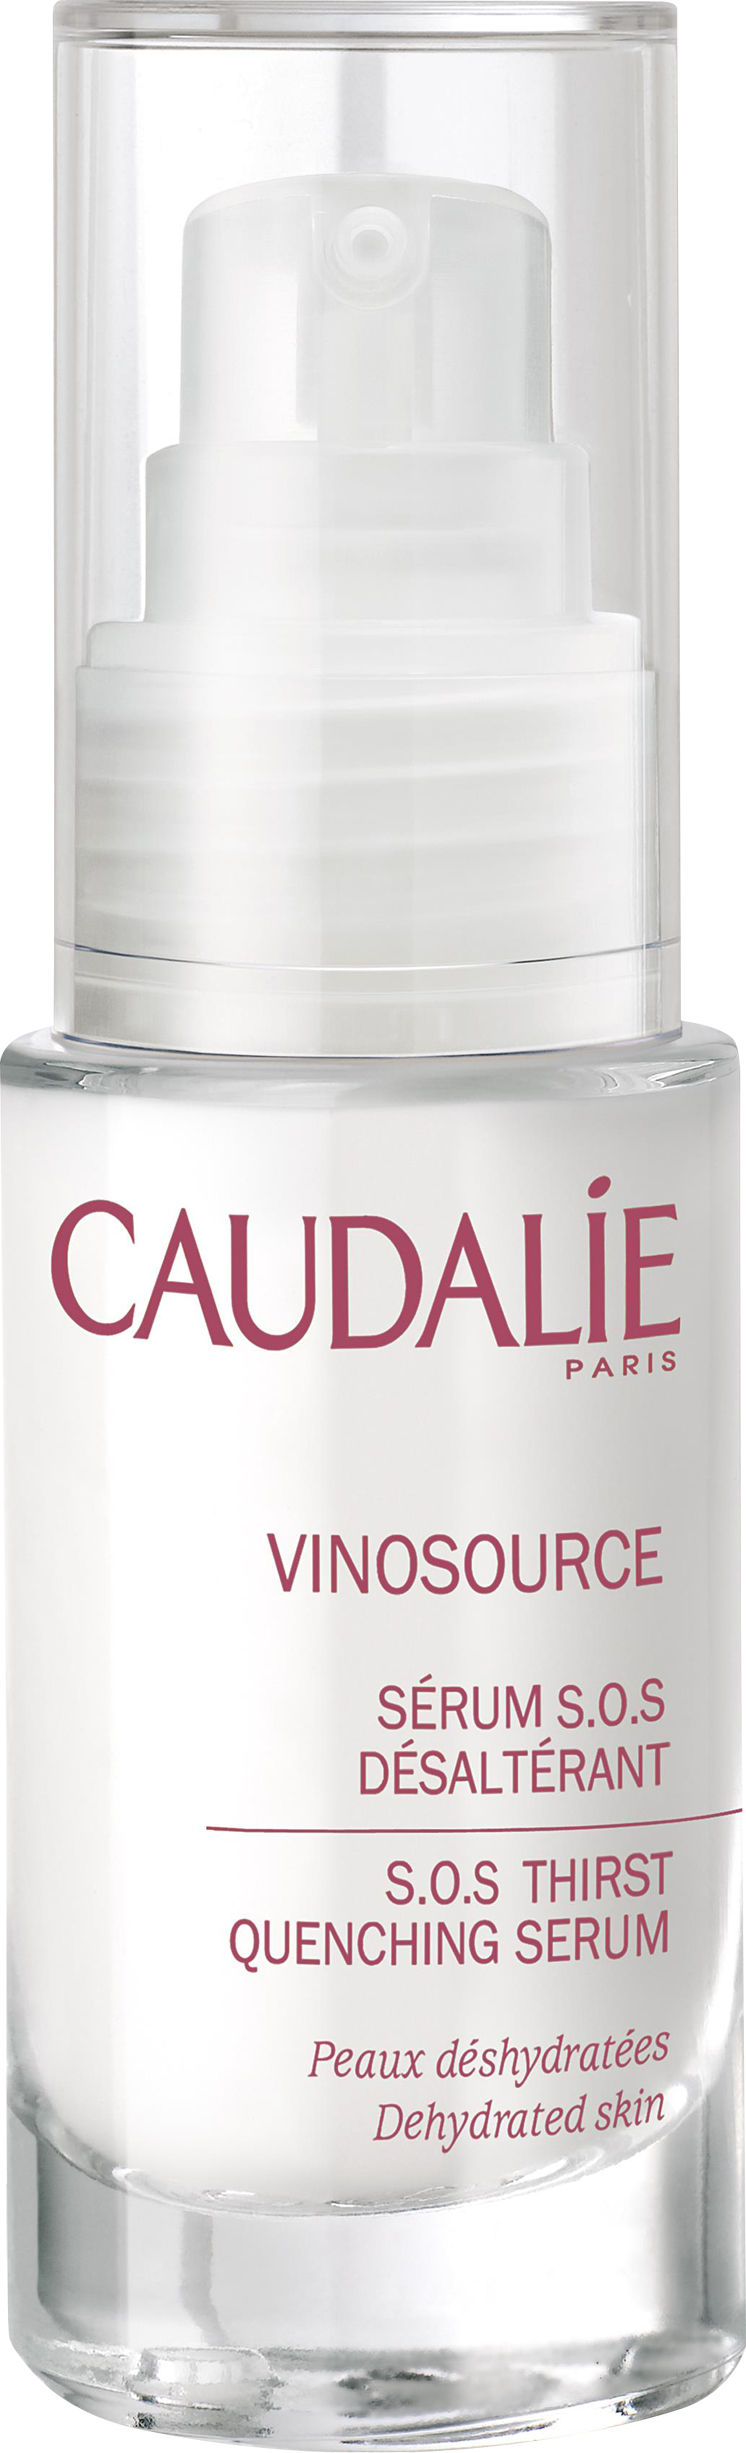 Caudalie - Vinosource SOS Thirst Quenching Serum 30 ml